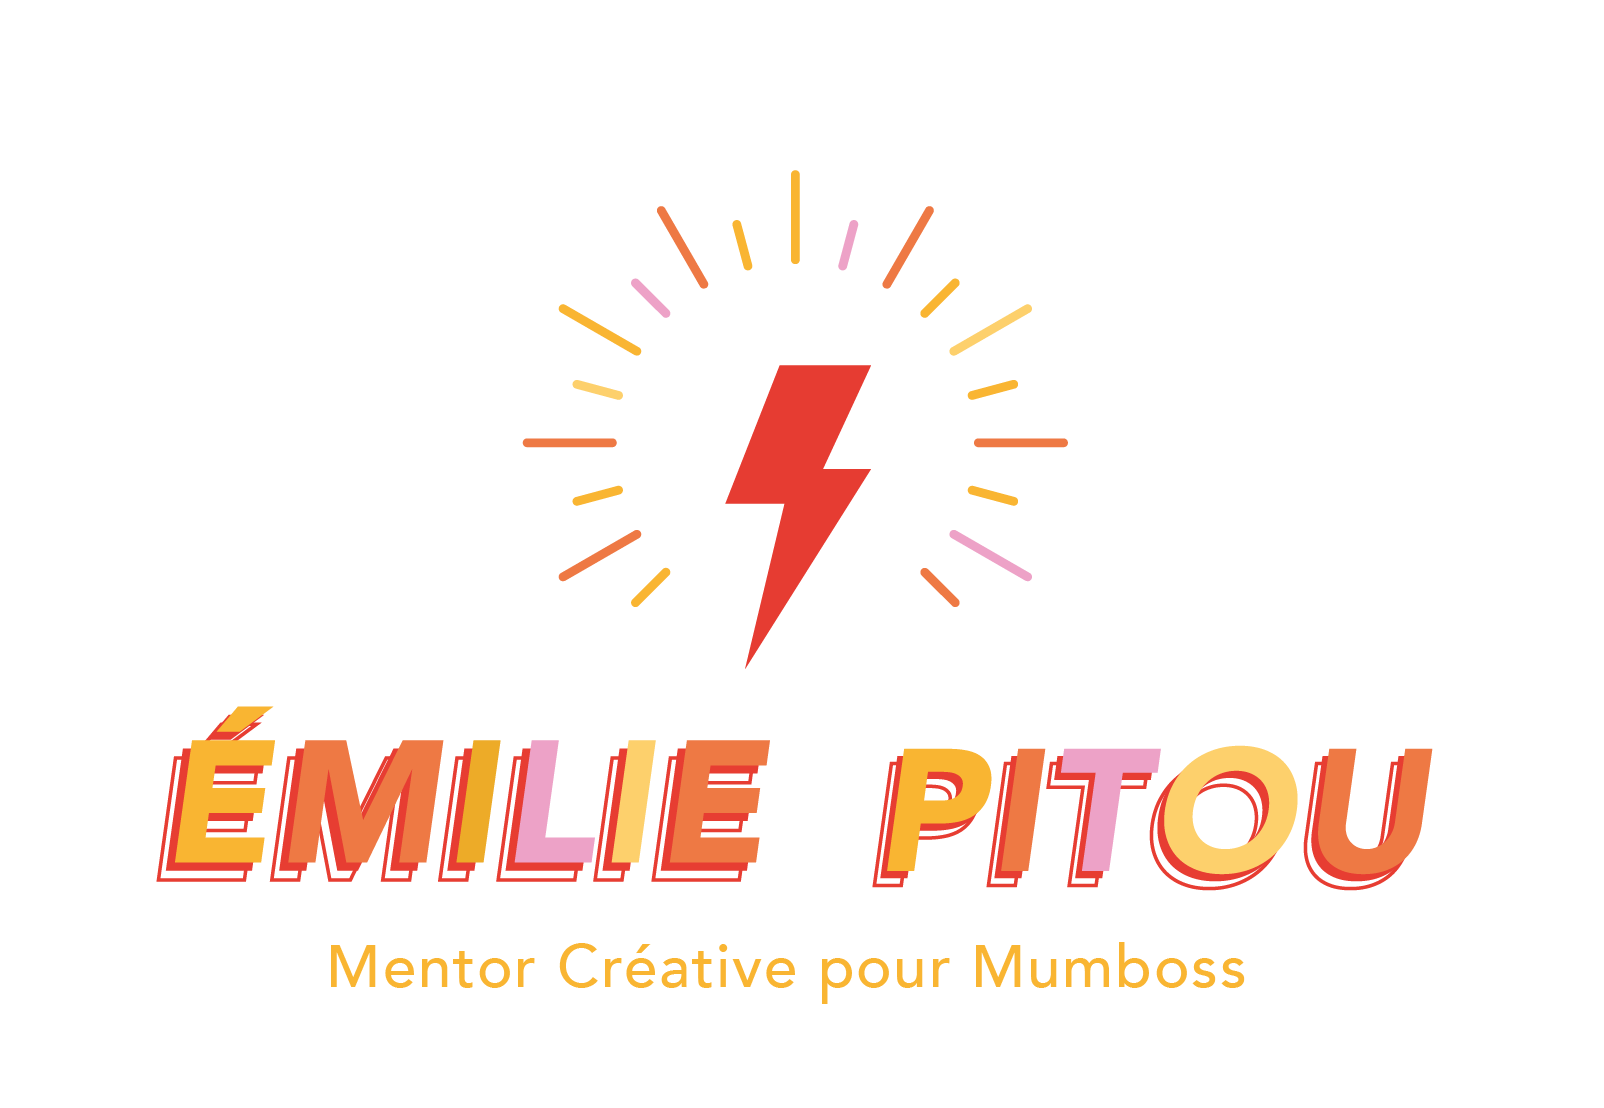 Emilie Pitou - Mentor Créative pour Mumboss